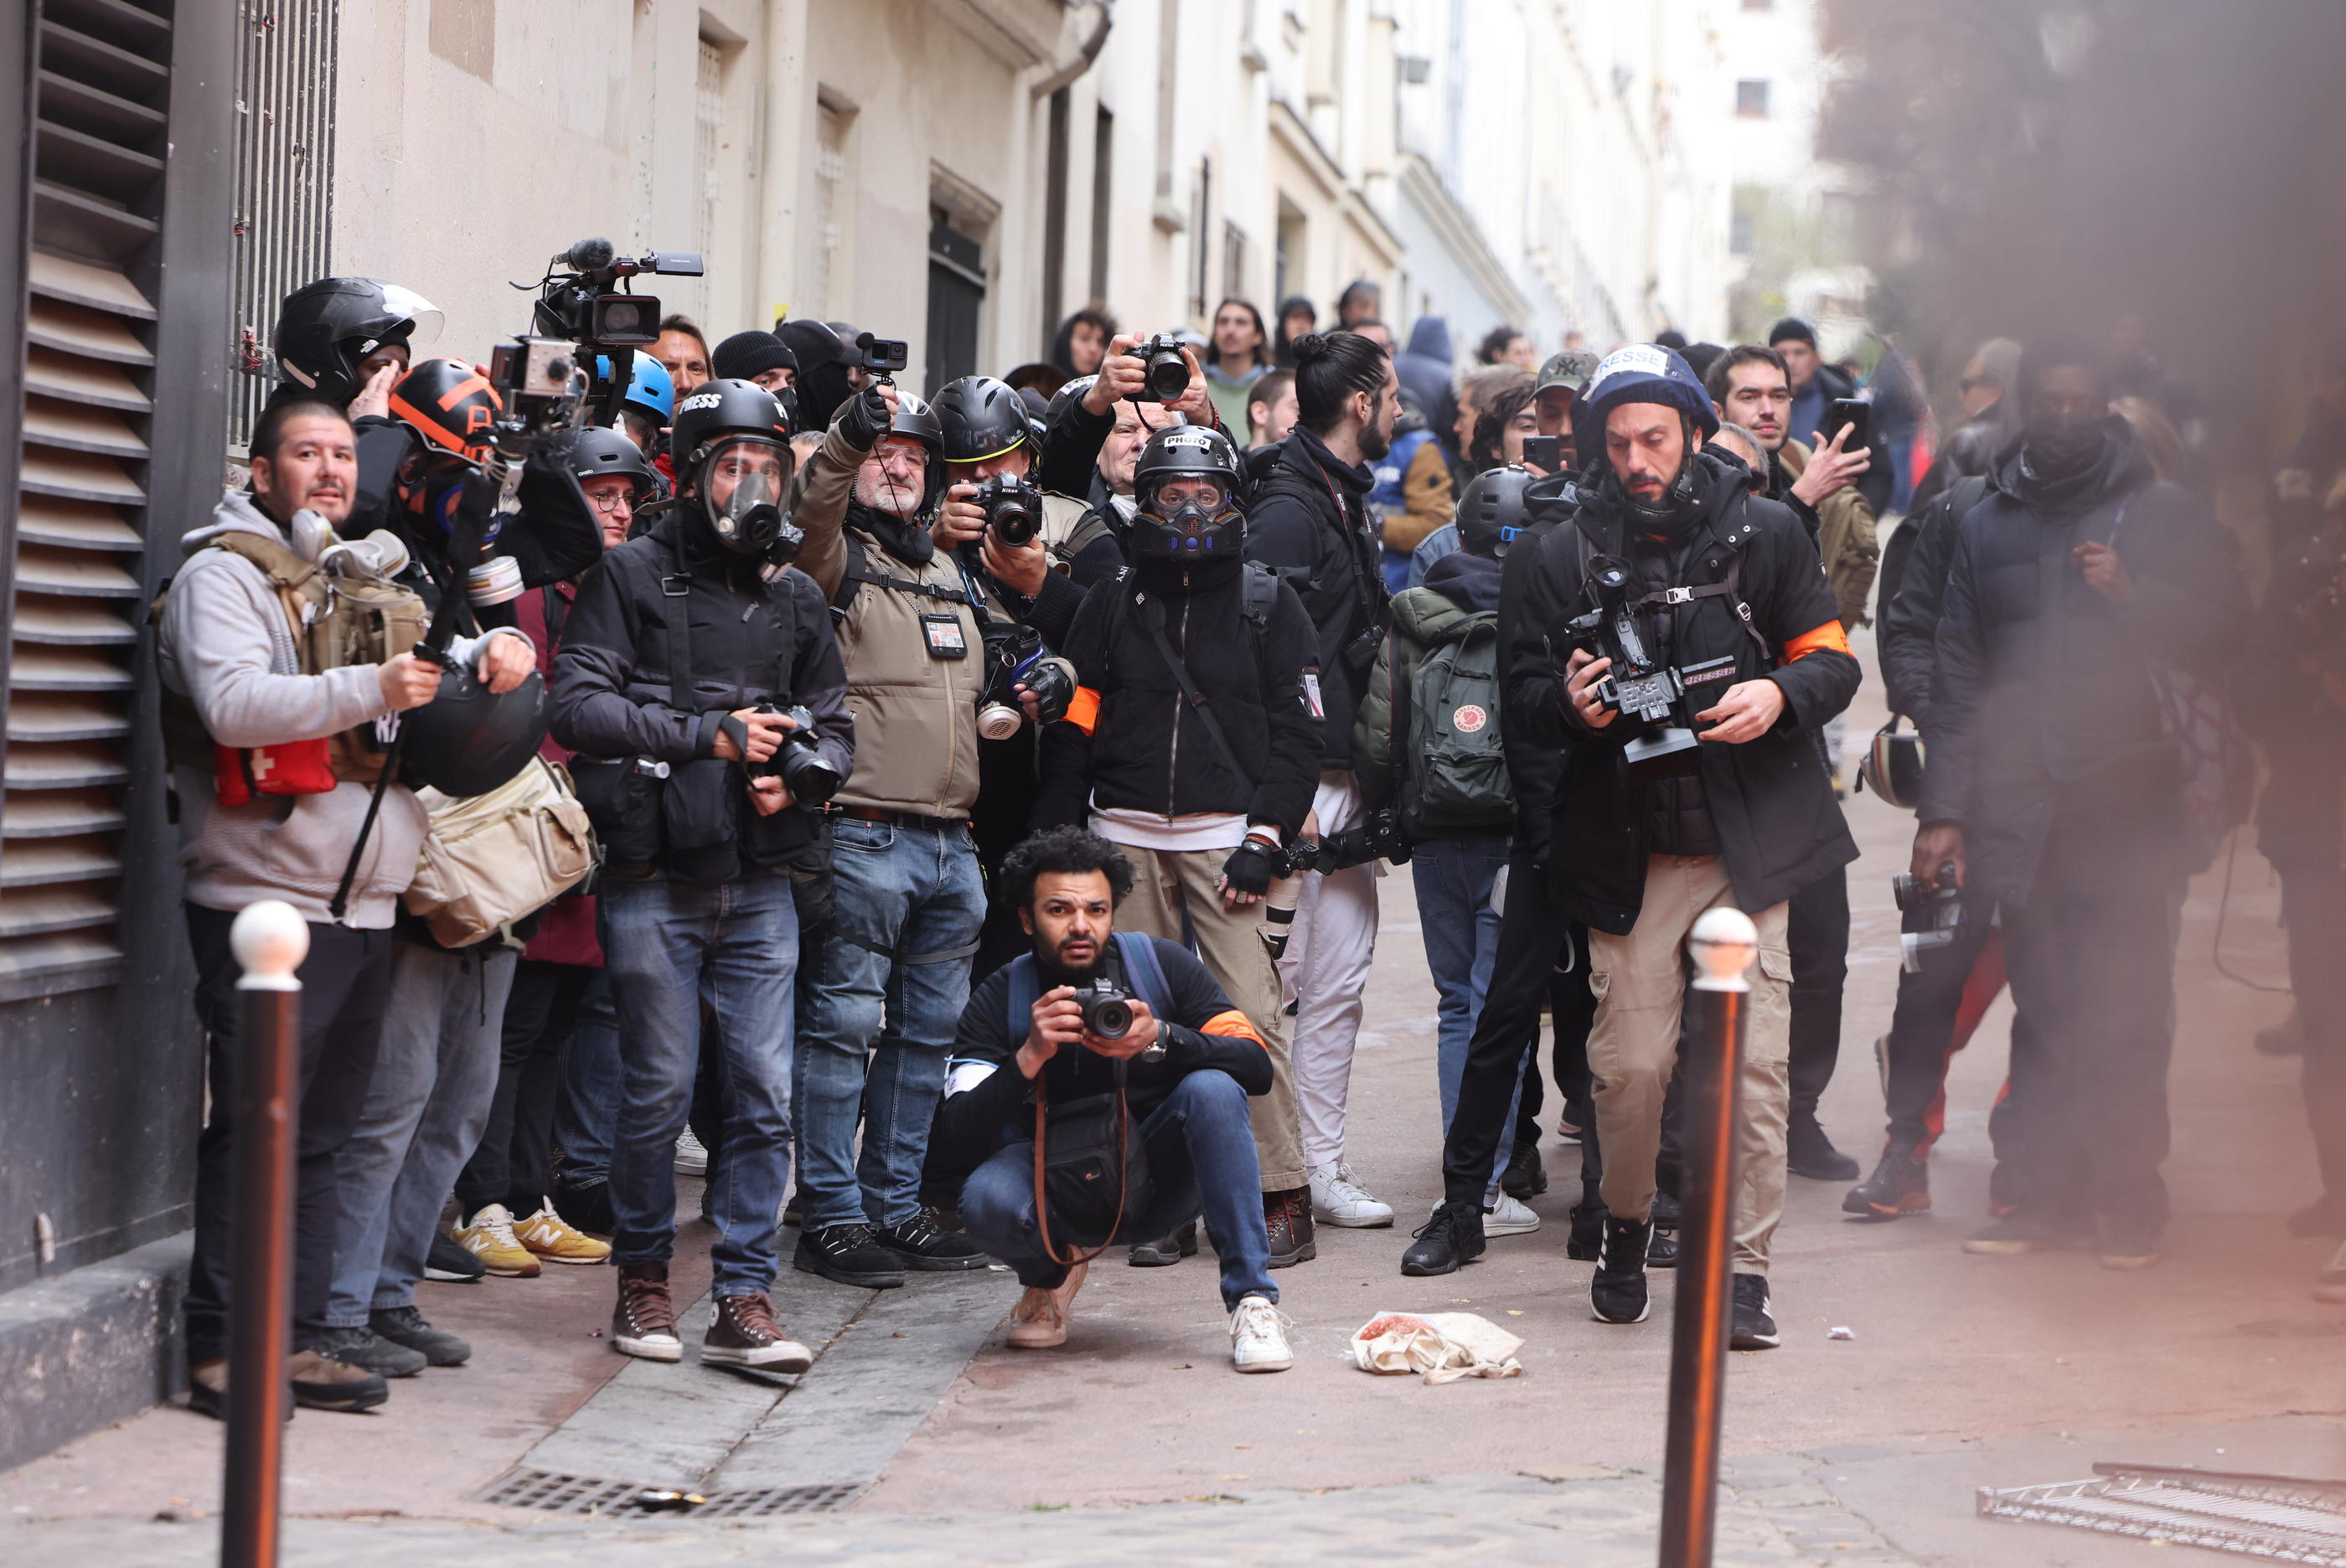 Journalistes débutants, vidéastes amateurs ou militants : des « street reporters » documentent eux-mêmes le confit social en diffusant leurs images sur les réseaux sociaux. LP/Arnaud Journois